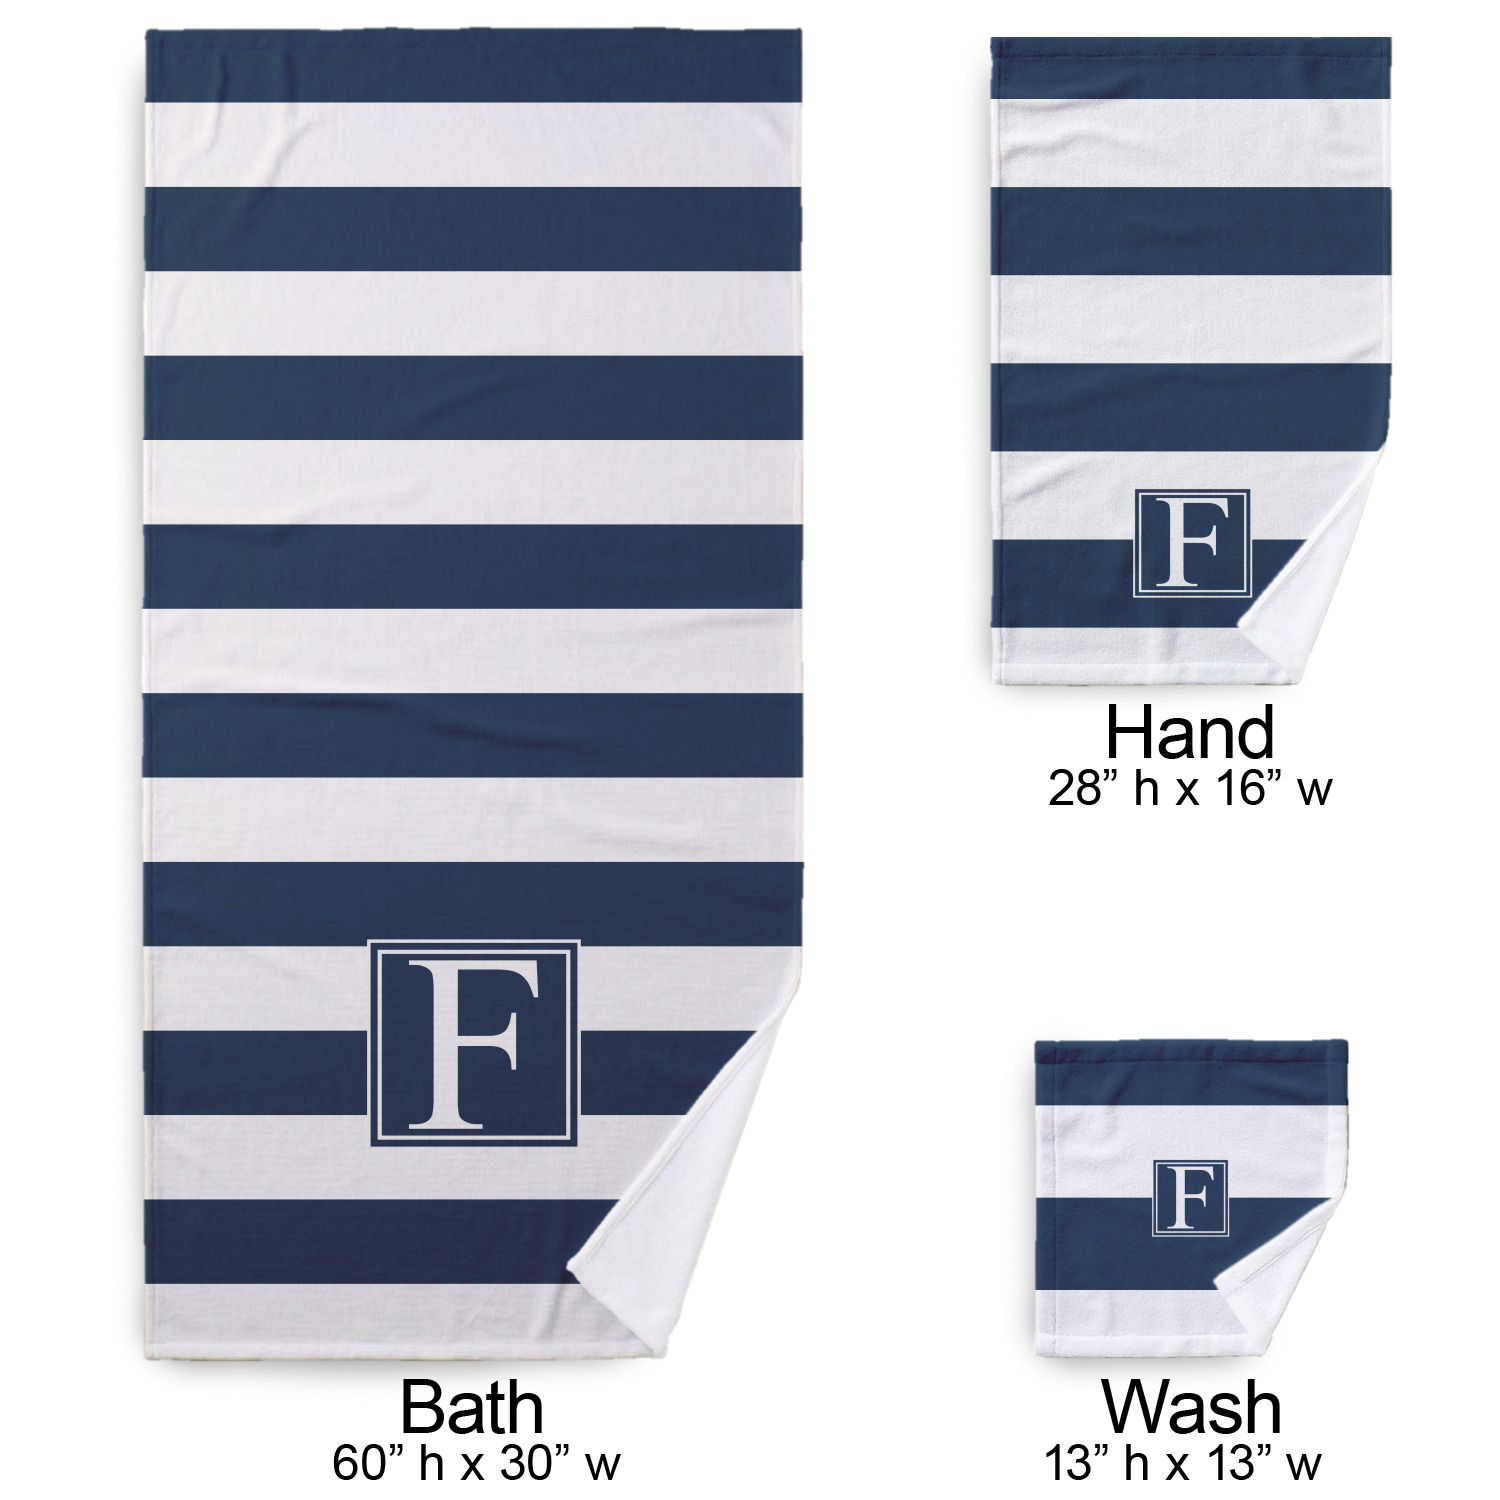 3 Piece Towel Set with Stripe Design